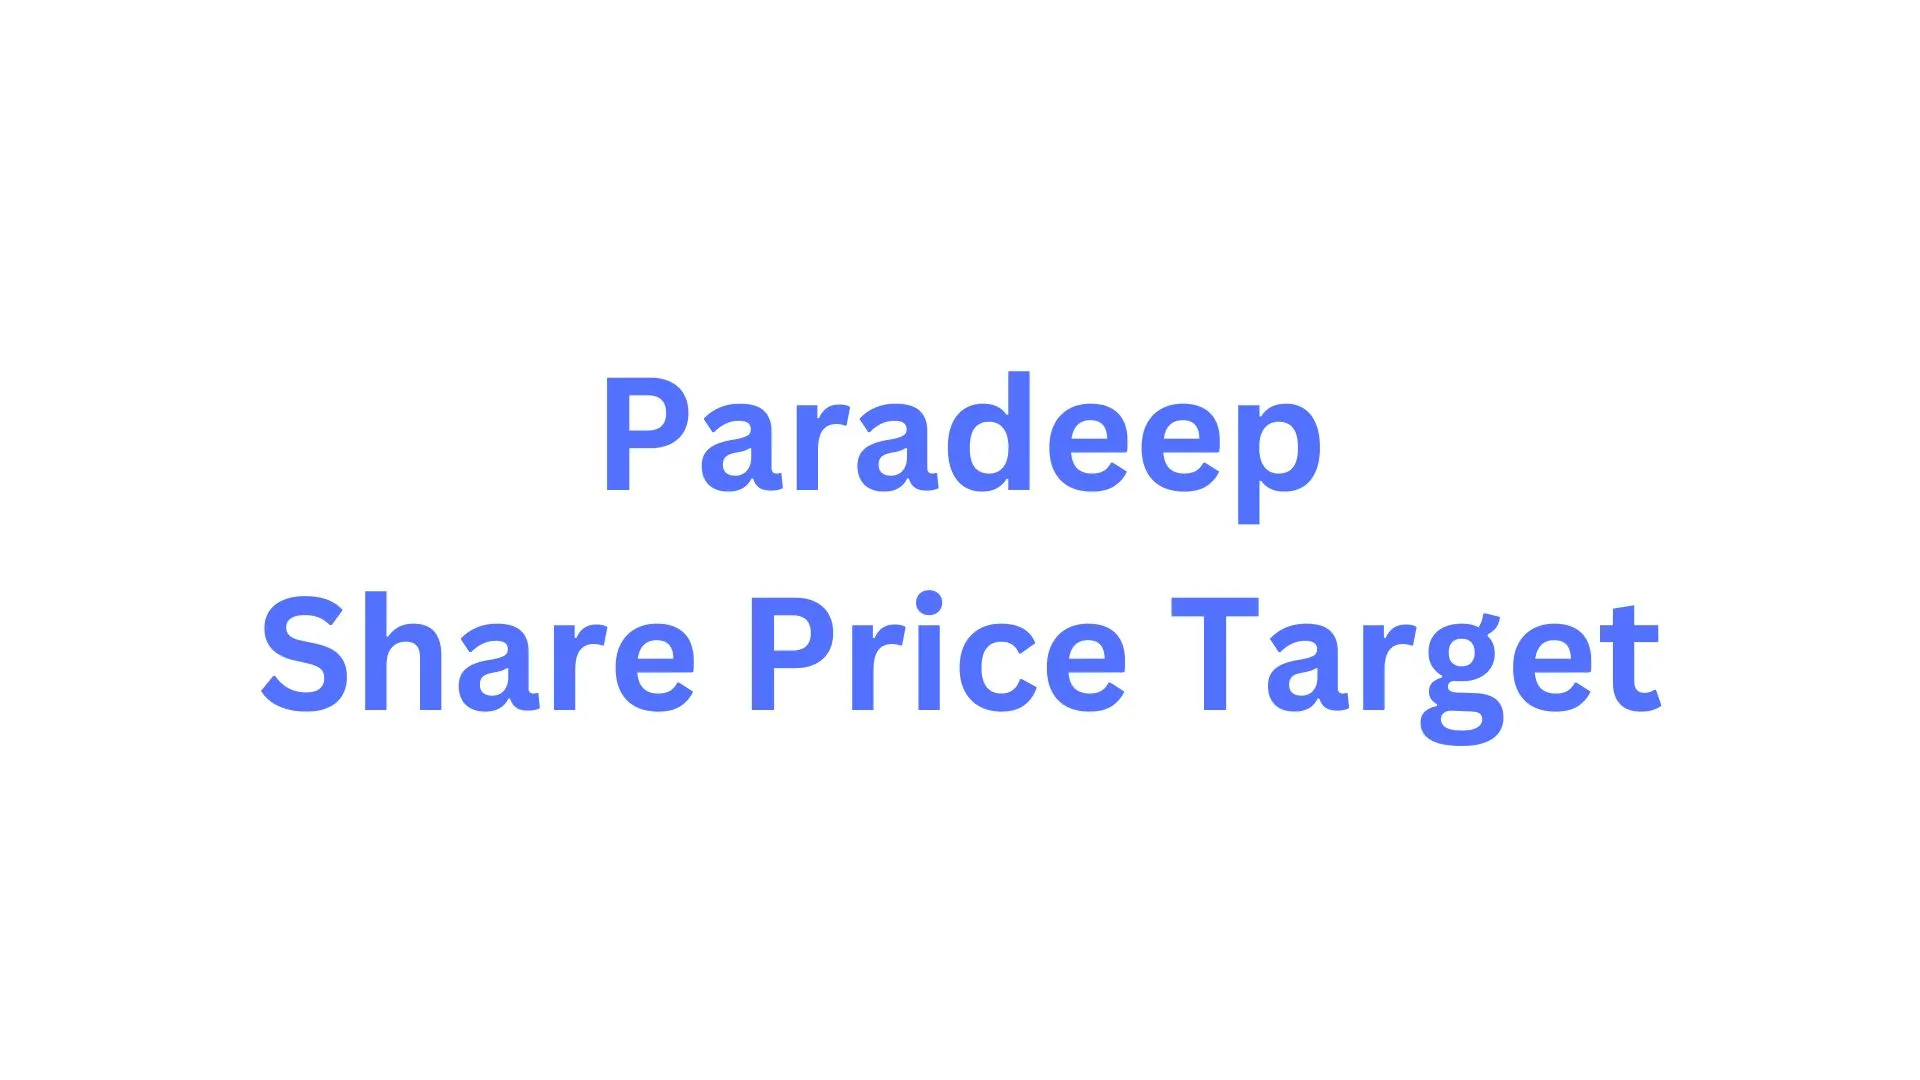 Paradeep Share Price Target